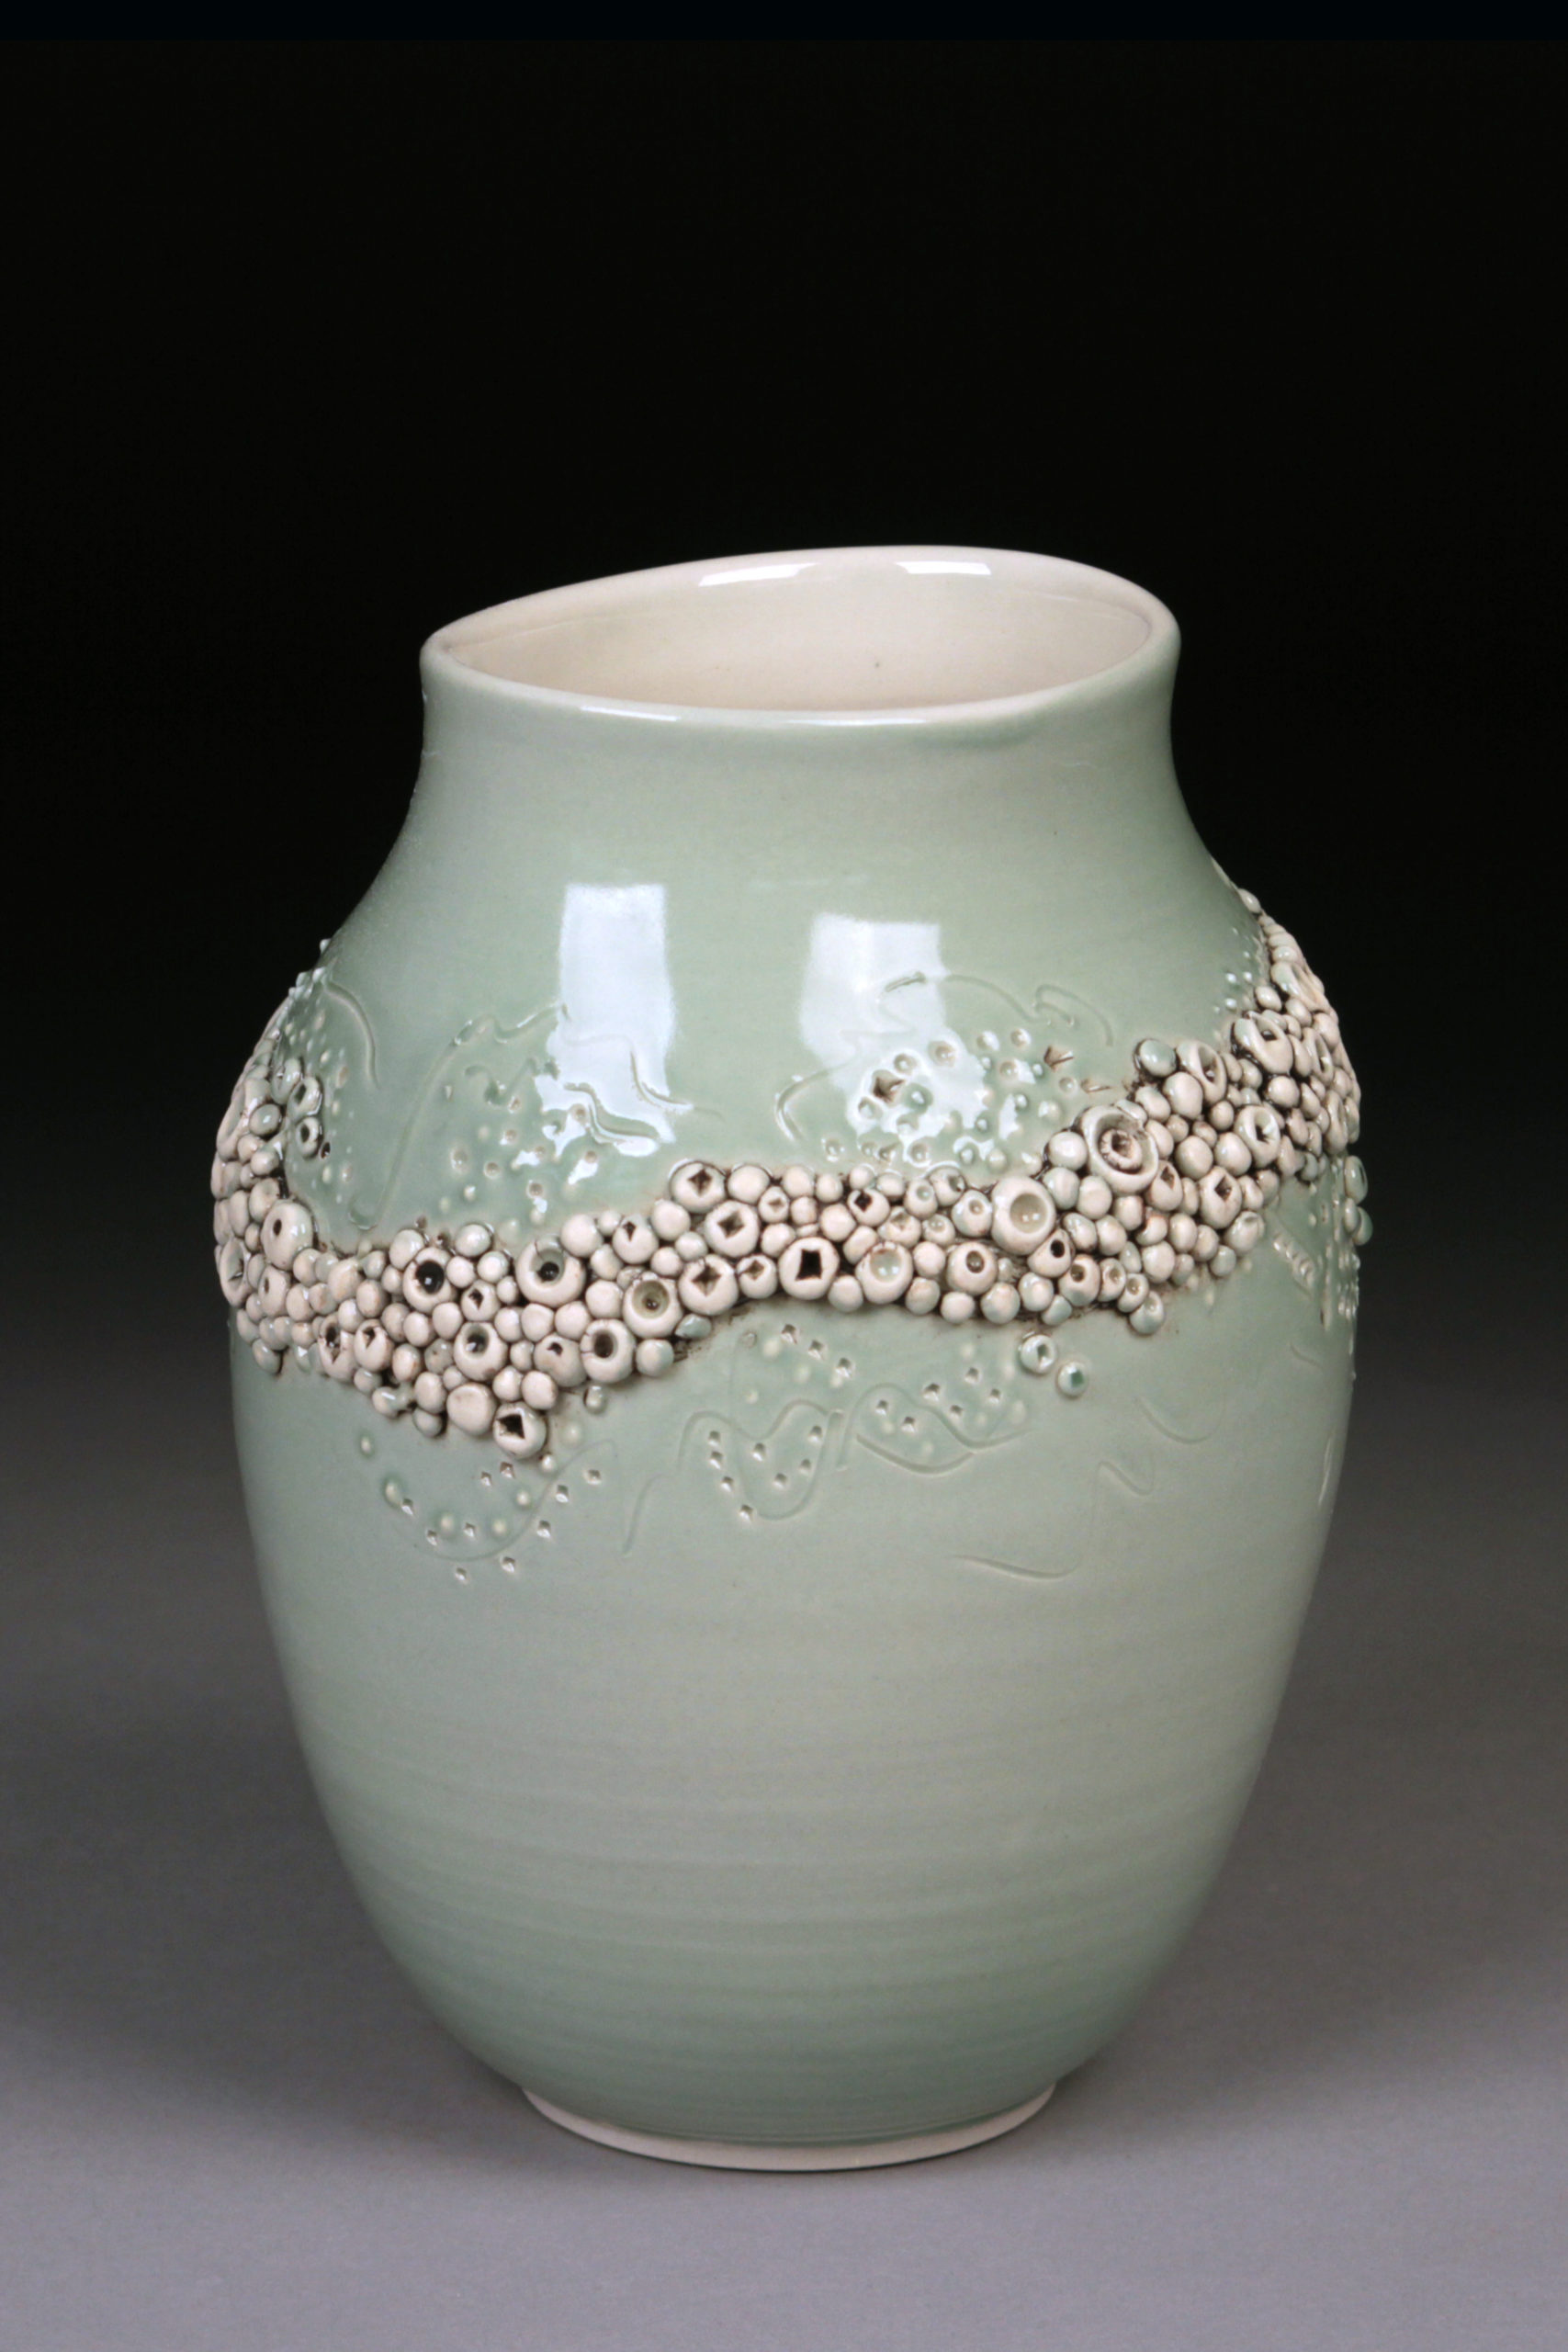 ceramics3054